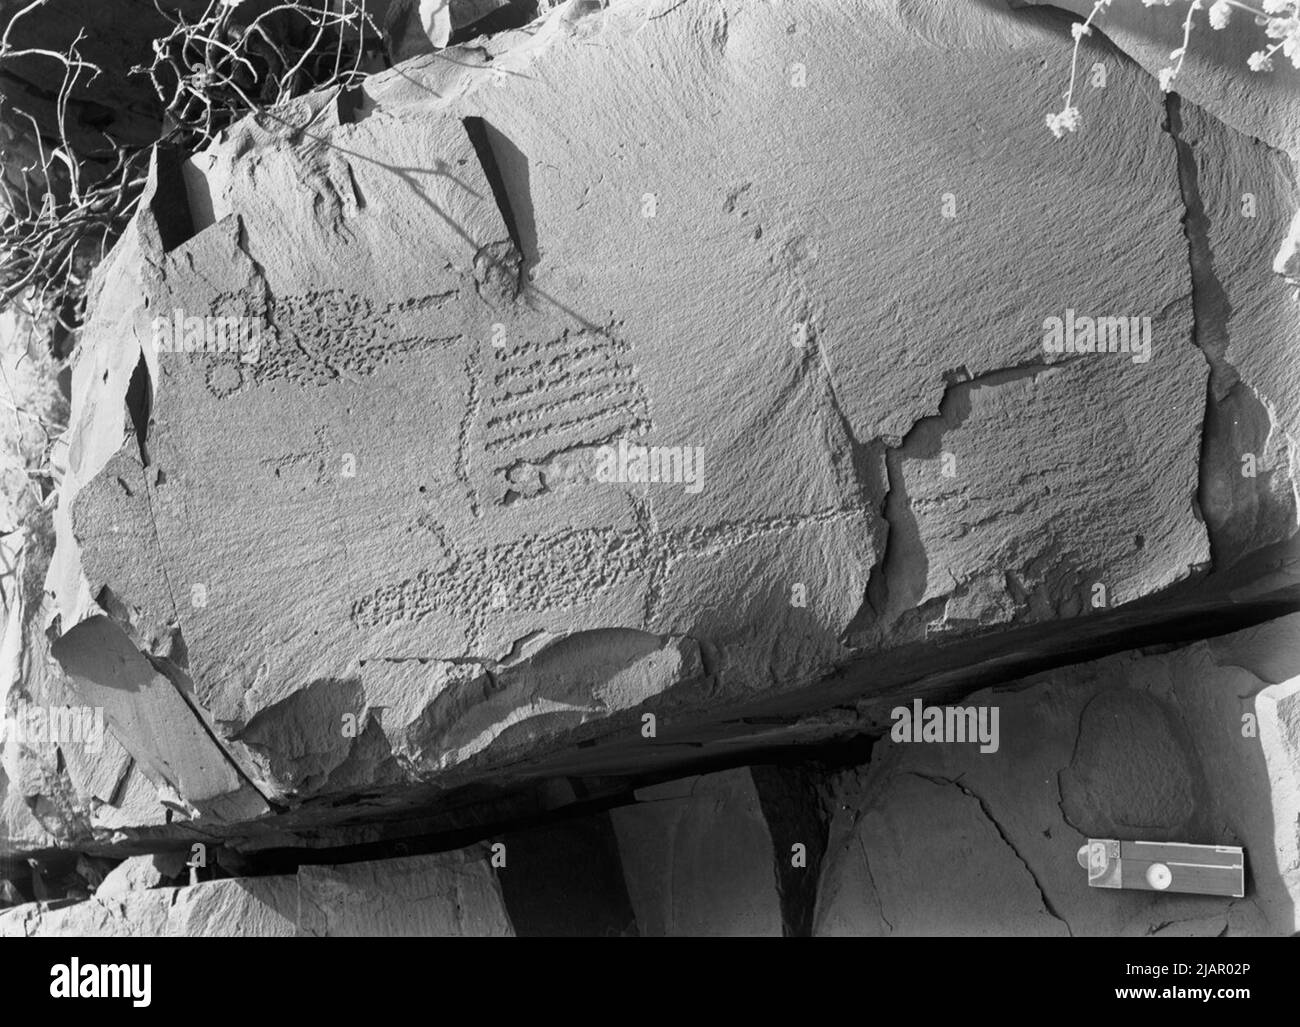 Sculture di roccia. Un quadro molto definito di una lucertola completamente 60cm lungo risalta audacemente (Deception Creek, Red Gorge, Flinders Ranges, South Australia) ca. 1905-1914 Foto Stock